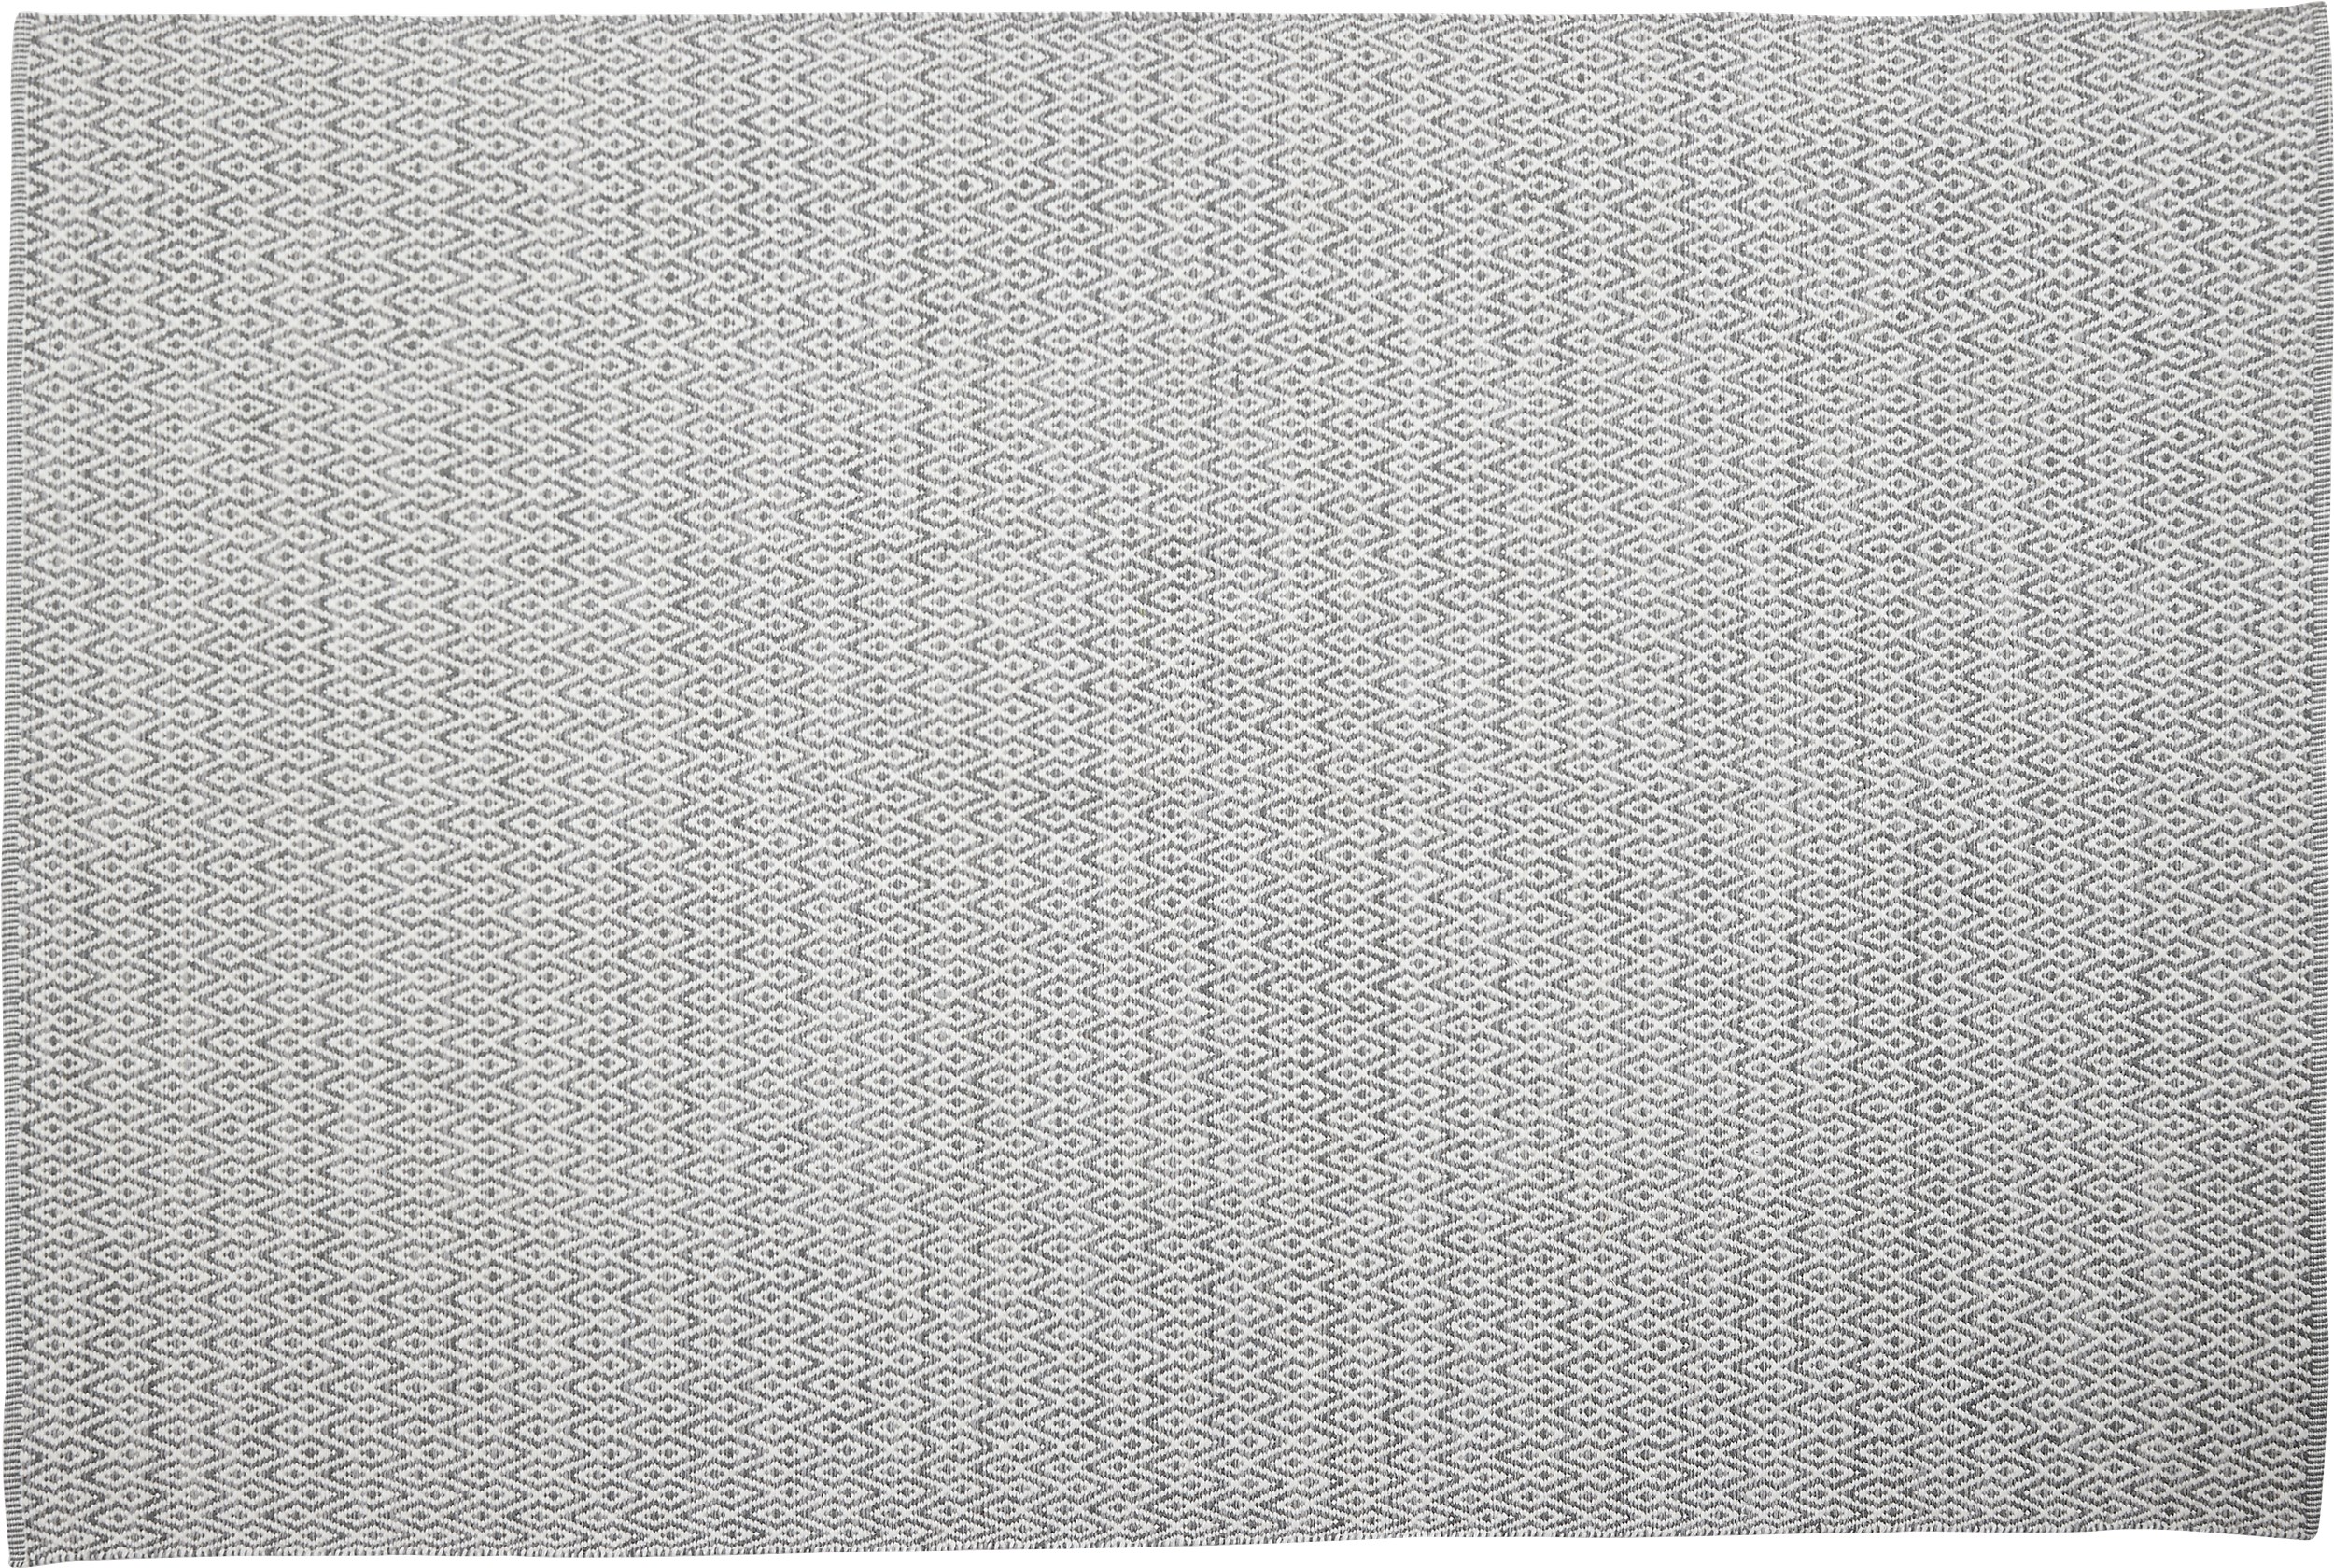 Rold Kelimmatta 160 x 230 cm - Offwhite/grå och diamant form